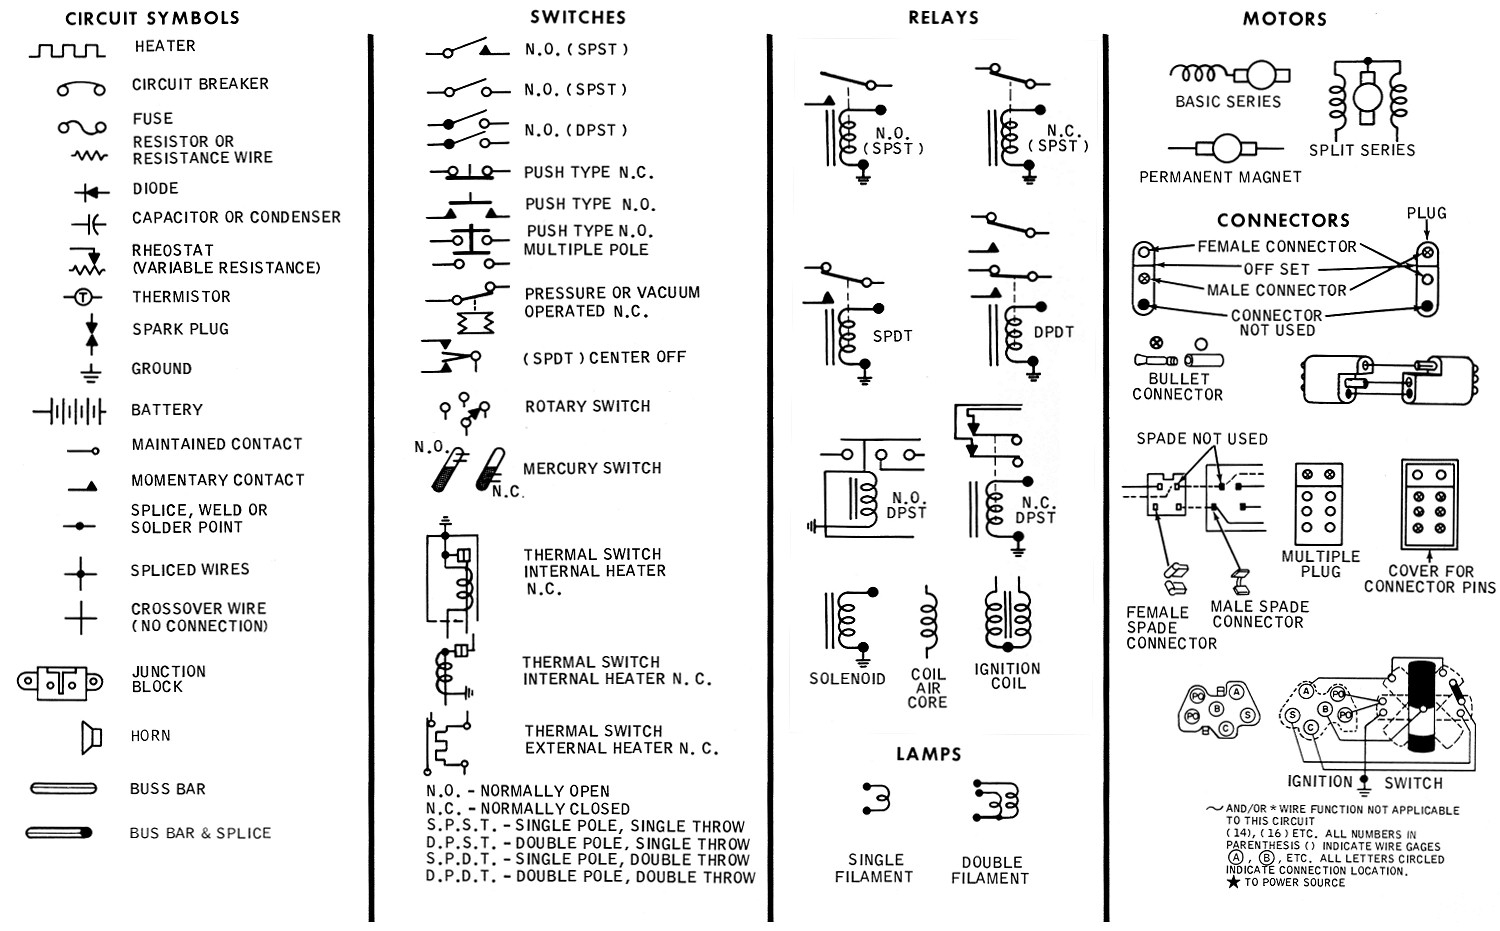 Wire Schematics Symbols - Wiring Diagram Data - Wiring Diagram Symbols